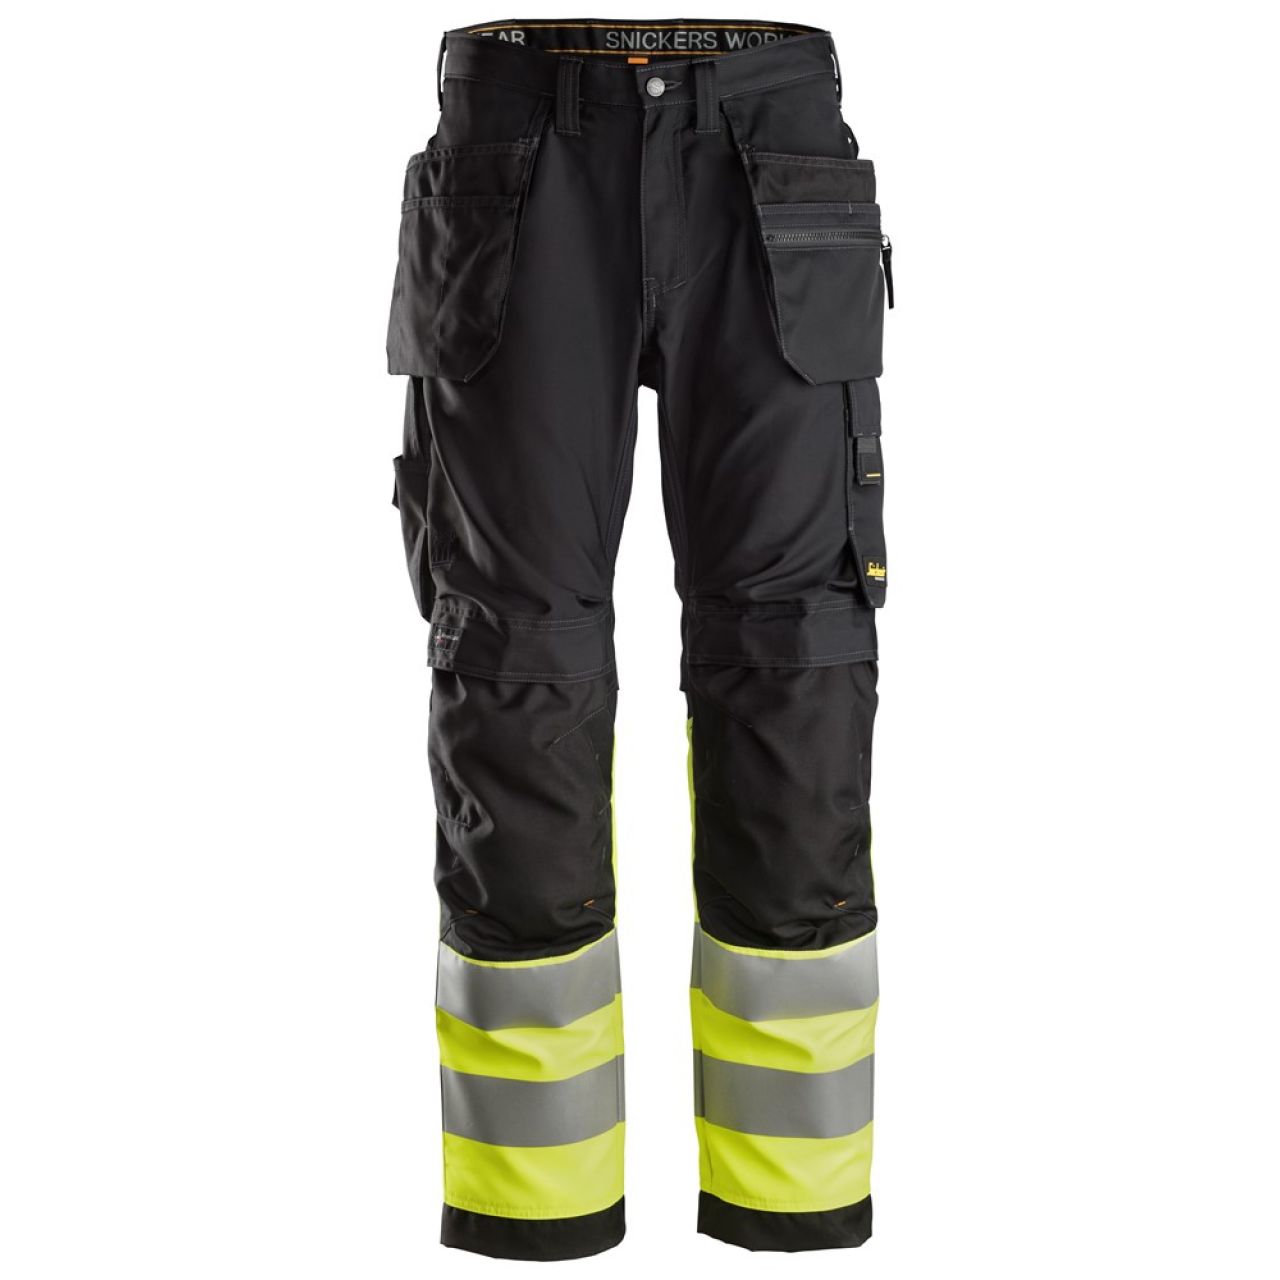 6233 Pantalones largos de trabajo de alta visibilidad clase 1 con bolsillos flotantes AllroundWork negro-amarillo talla 56